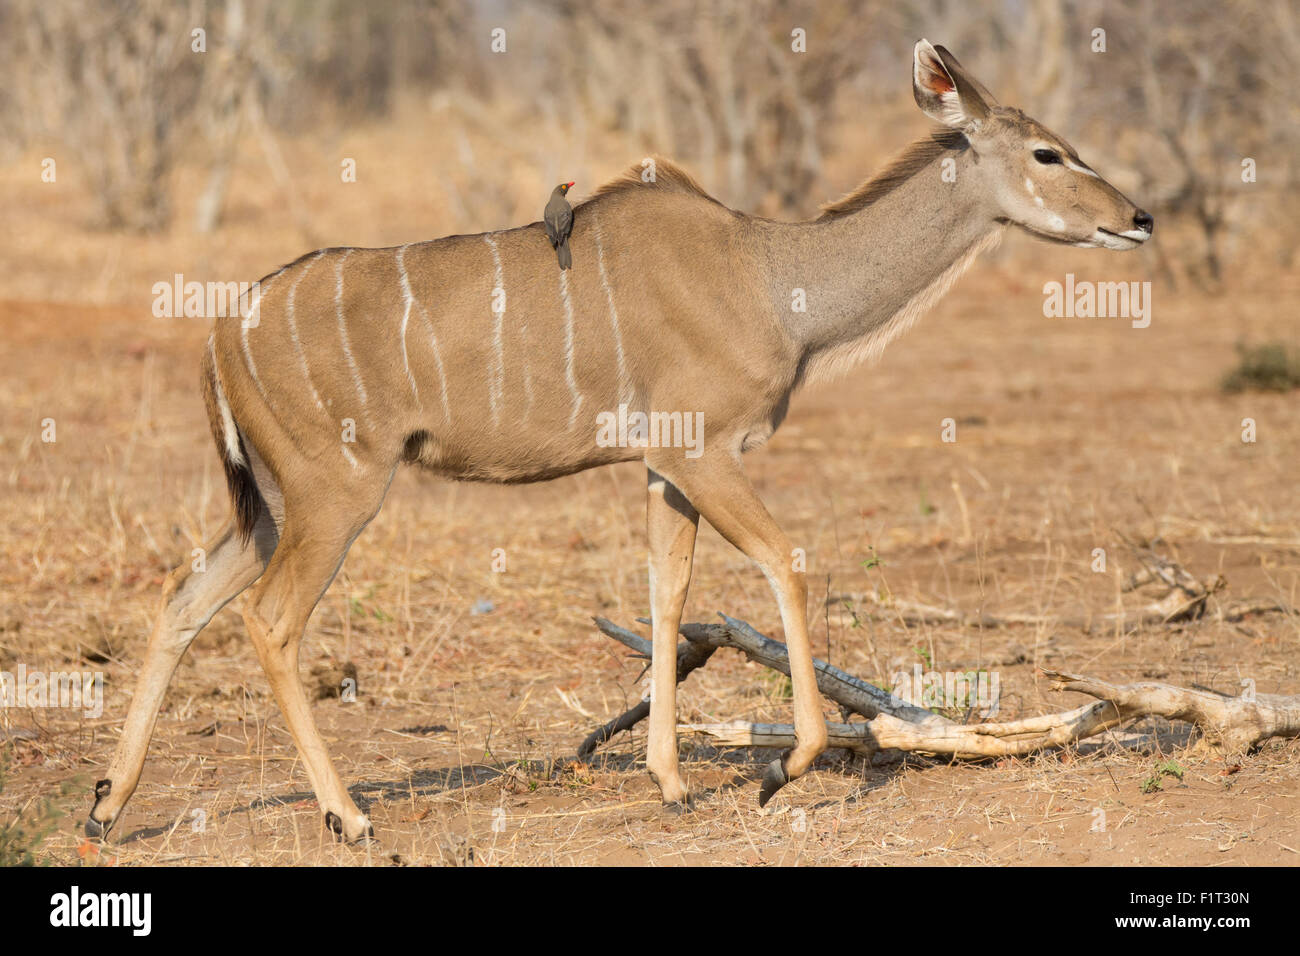 Kudu antelope and bird Stock Photo